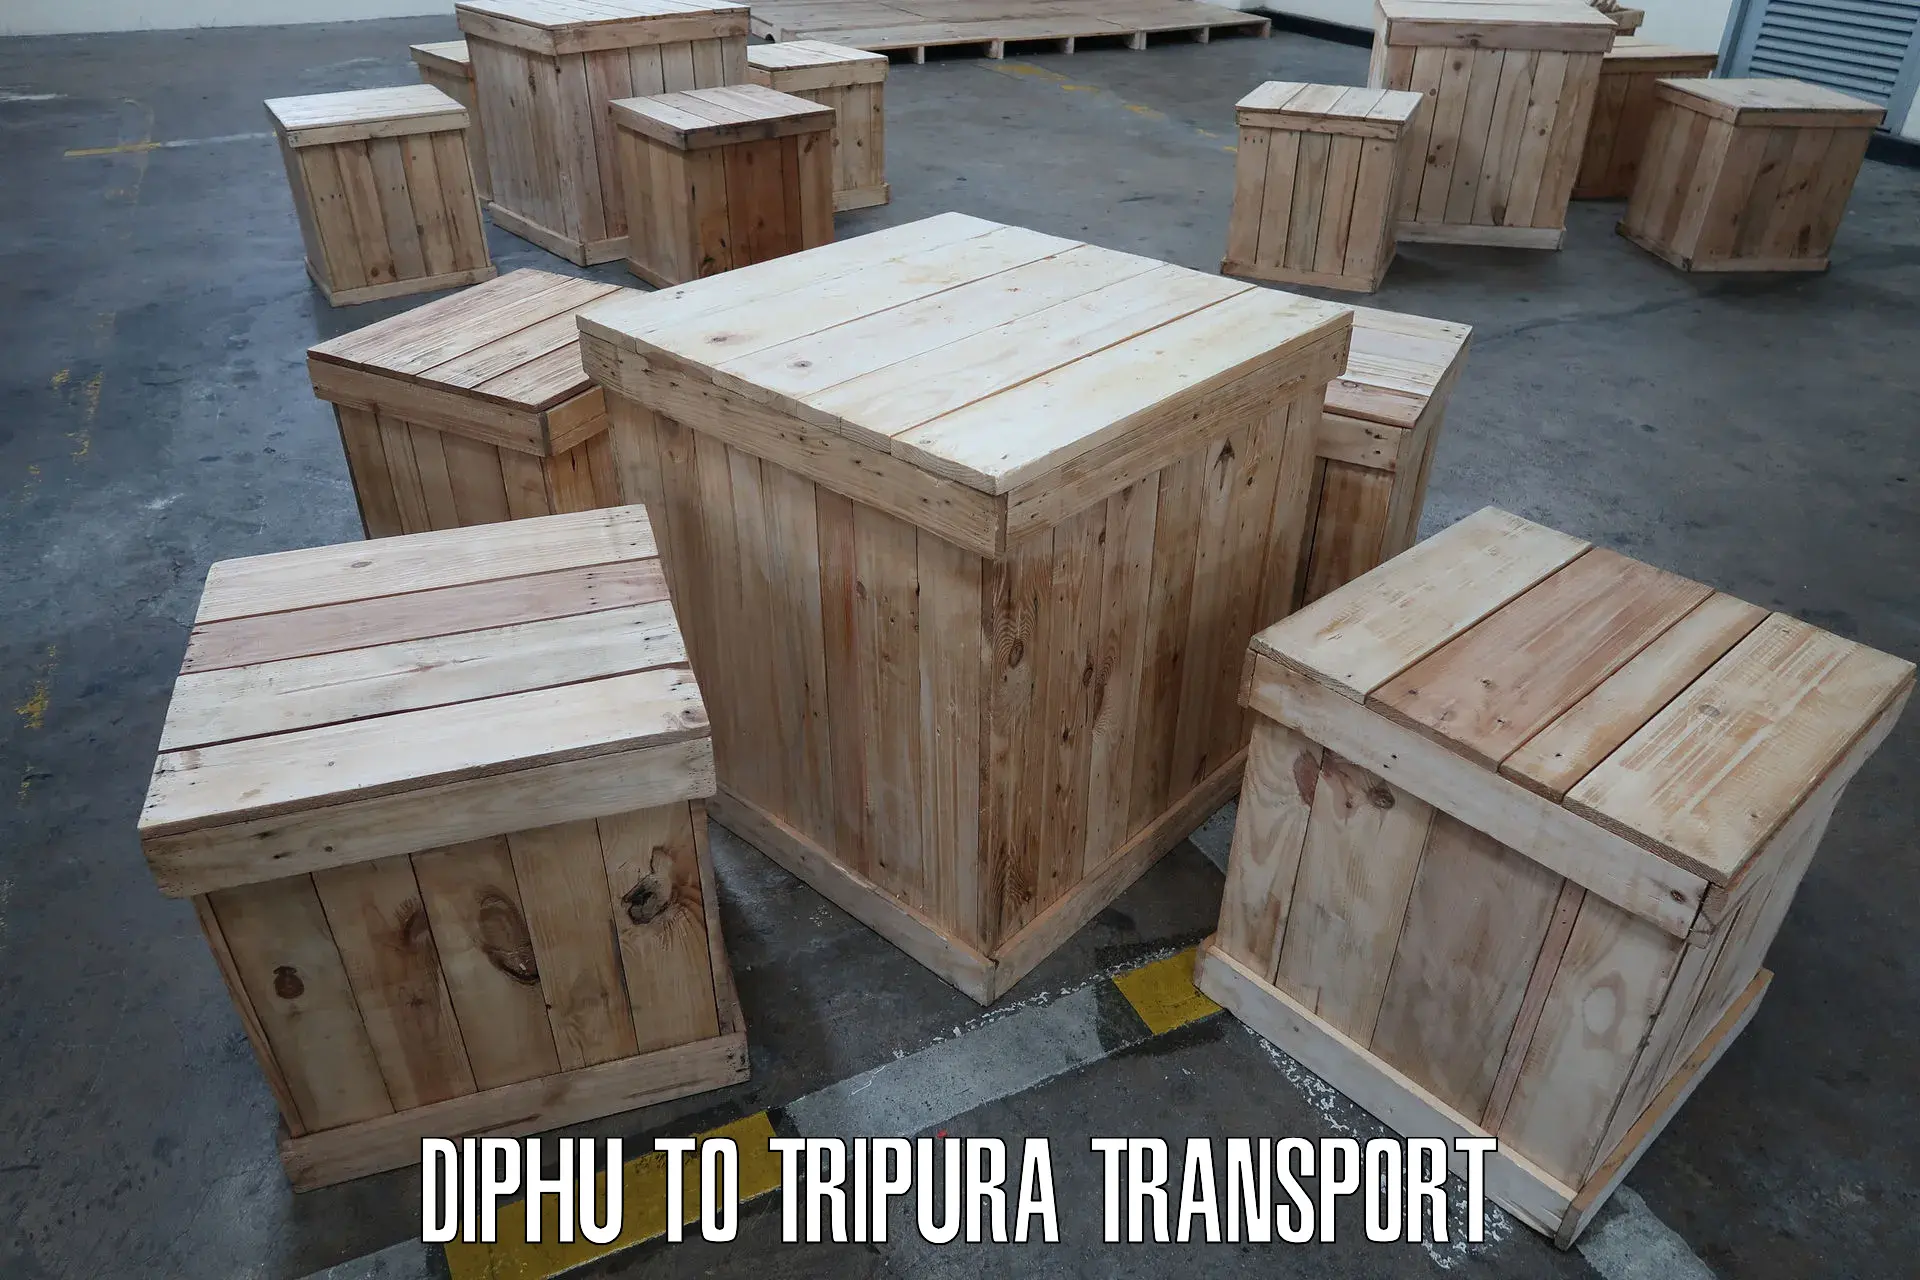 Online transport service Diphu to Amarpur